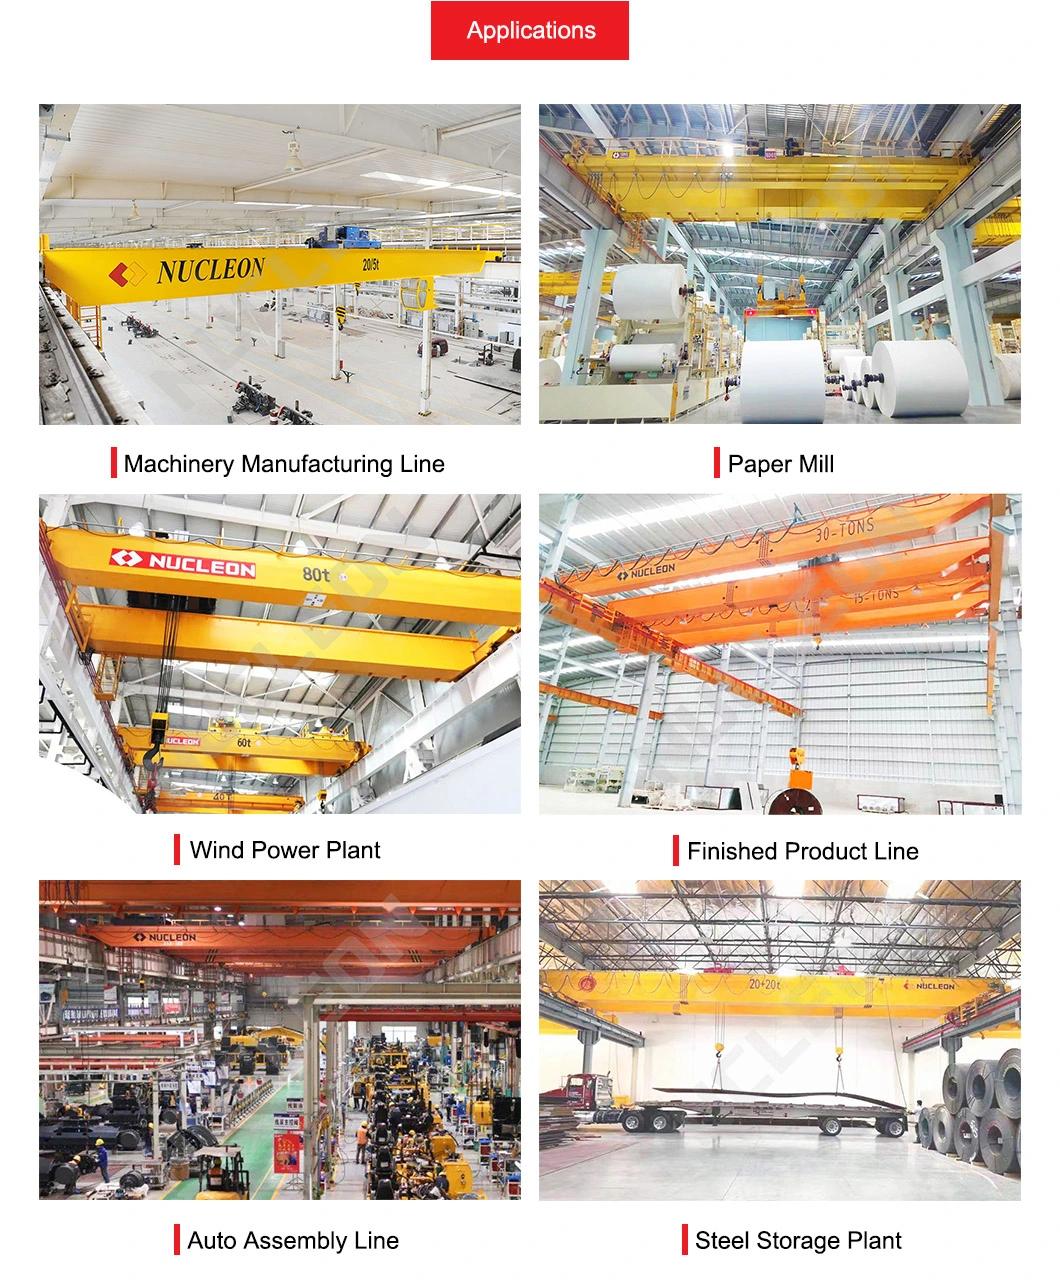 CE Certified Industrial 25t Double Girder Bridge Crane for Steel Rolling Mill Plant